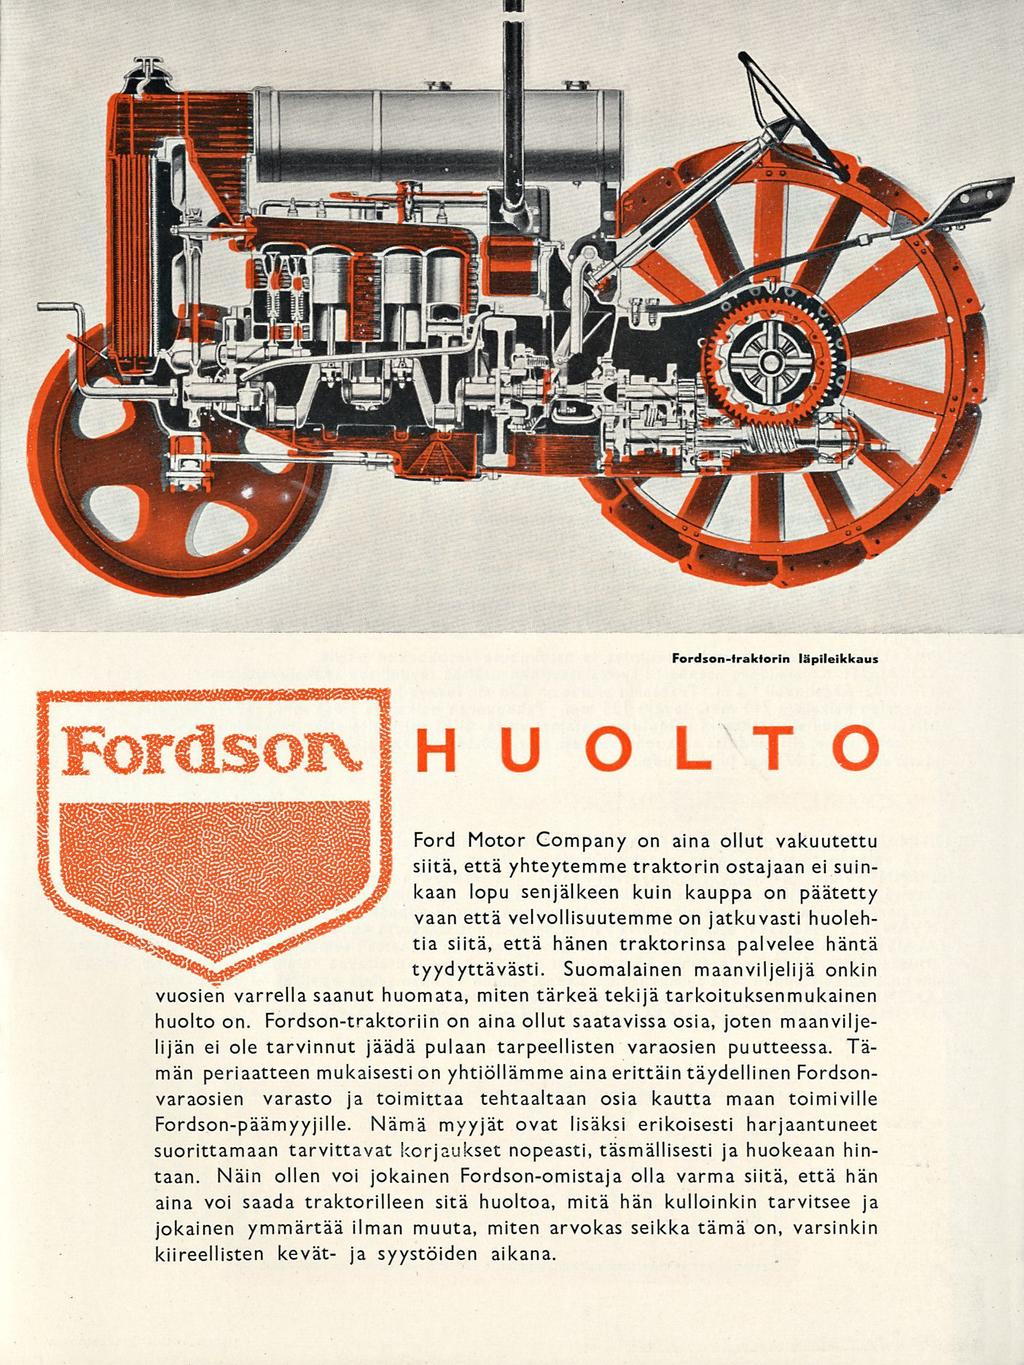 Fordson-traktorin läpileikkaus HUOLTO Ford Motor Company on aina ollut vakuutettu siitä, että yhteytemme traktorin ostajaan ei suinkaan lopu senjälkeen kuin kauppa on päätetty vaan että